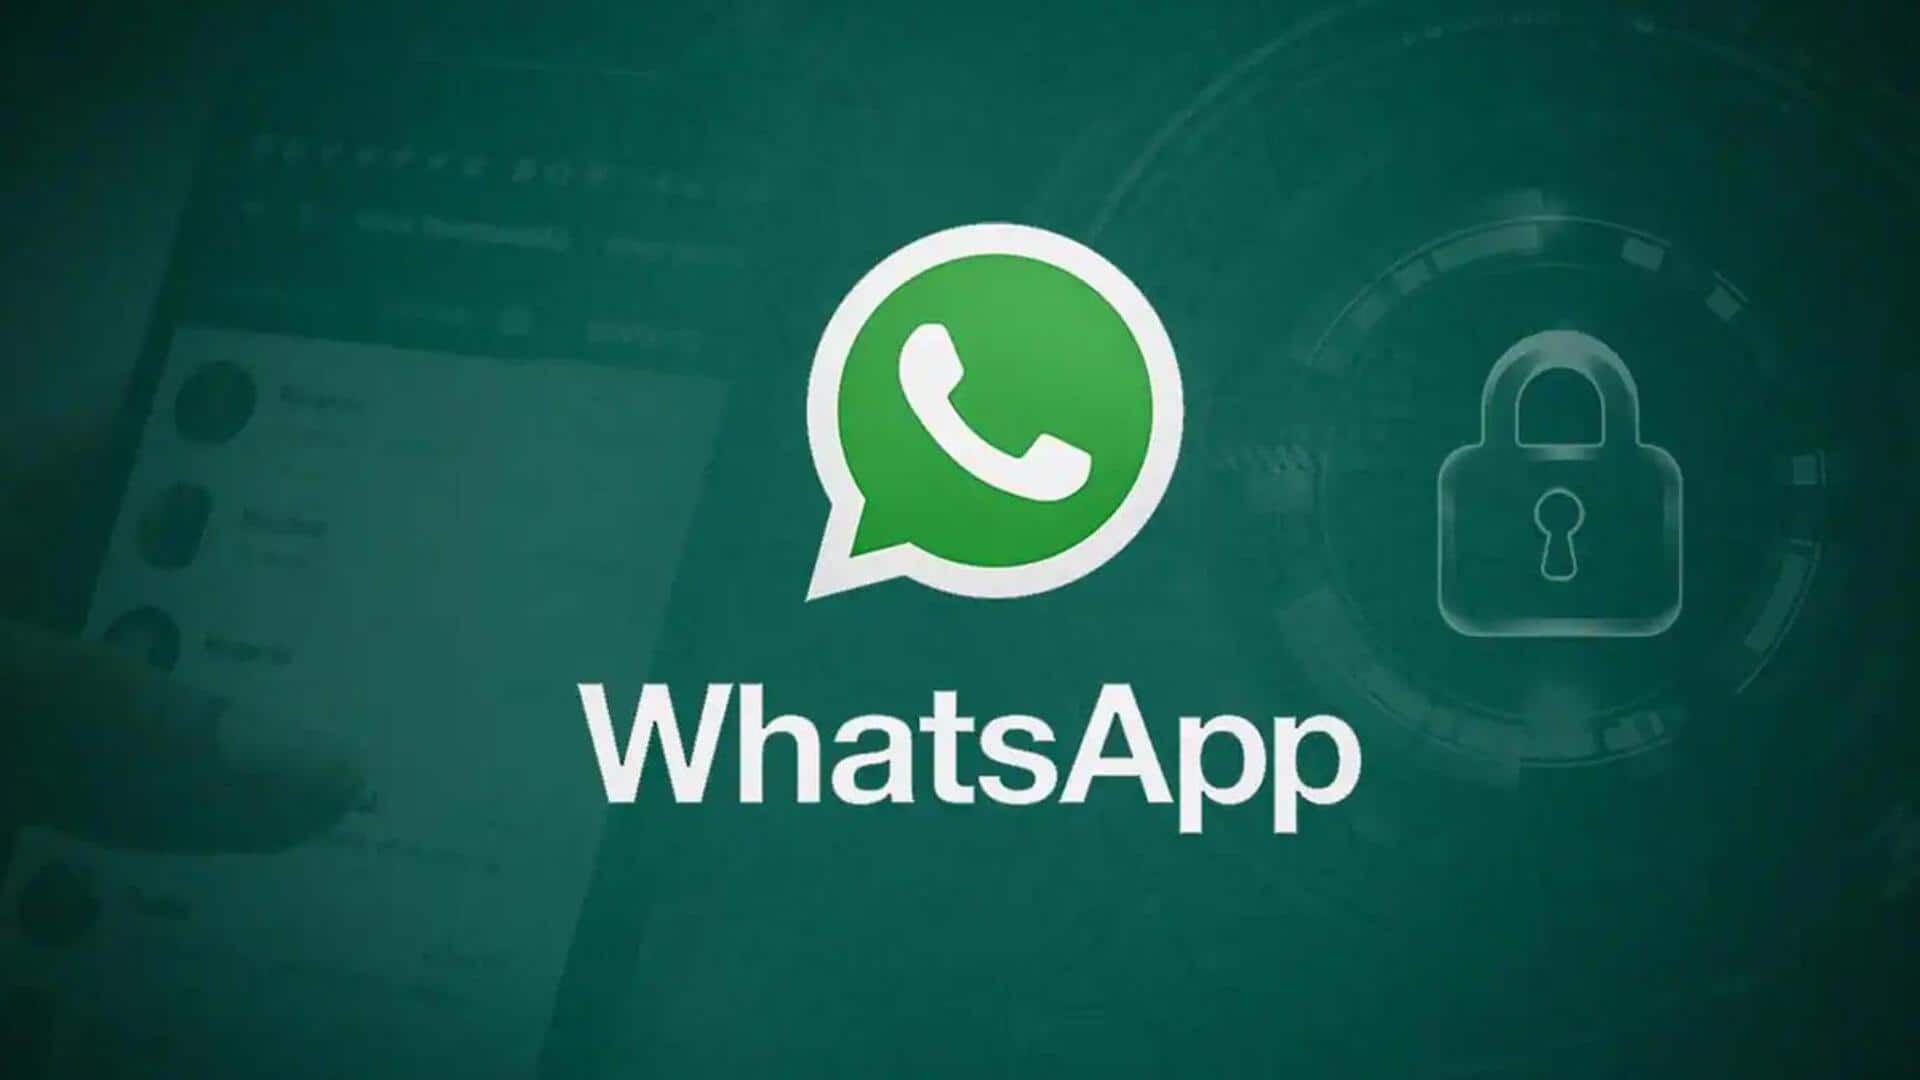 व्हाट्सऐप ने भारत में 2 करोड़ अकाउंट्स के खिलाफ की कार्रवाई, जानें वजह